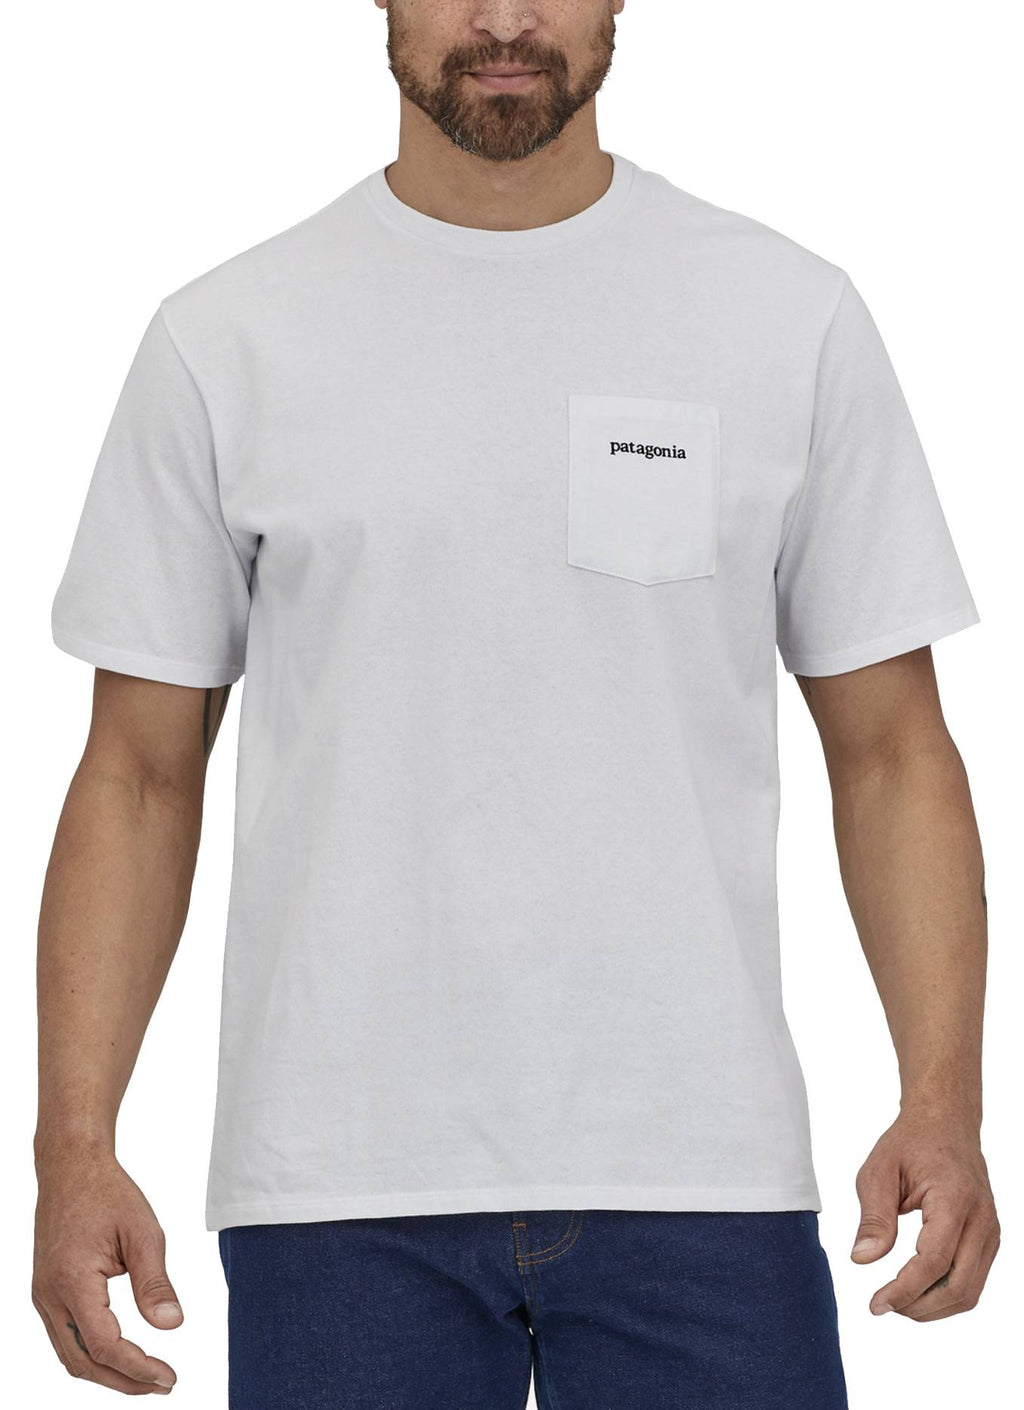  Patagonia T-shirt Men's Boardshort Logo Pocket Responsibili Tee White Bianco Uomo - 2